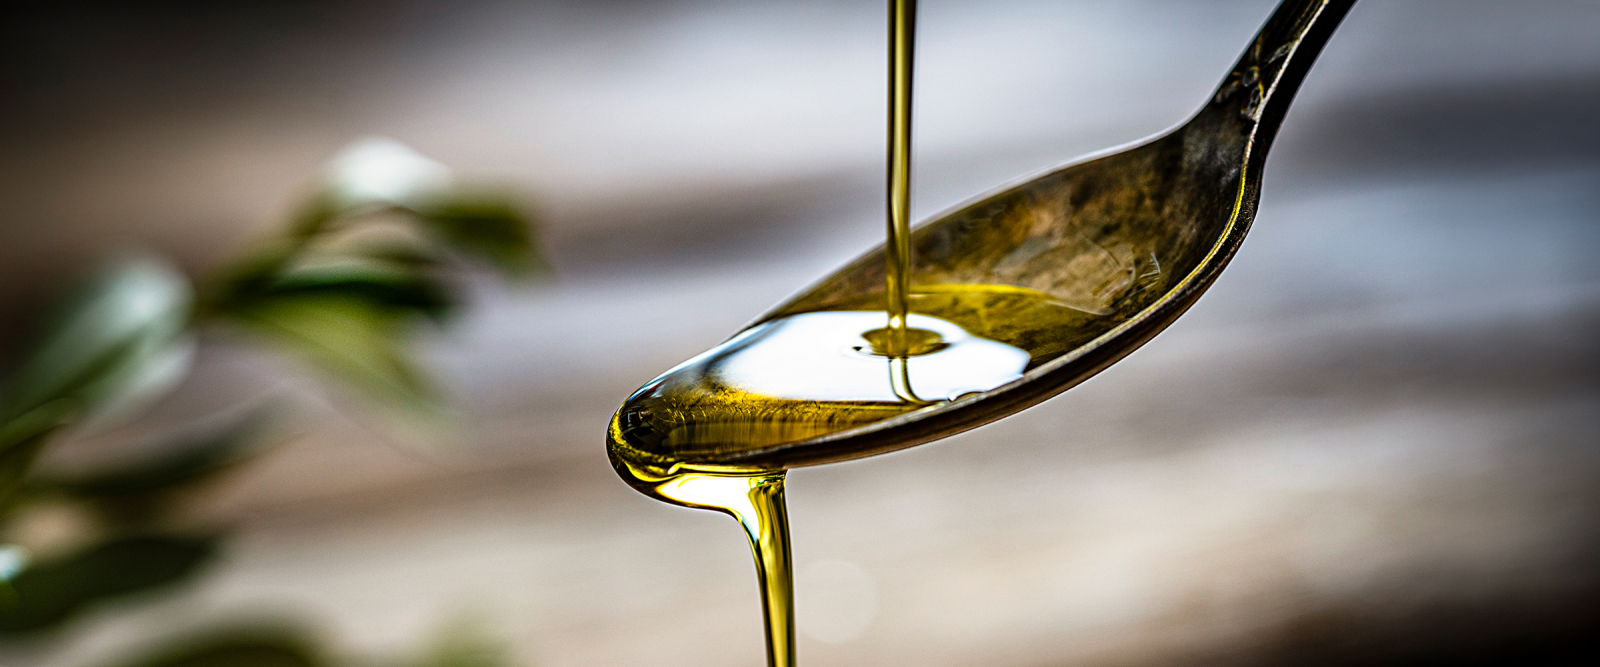 Nachhaltigkeit von pflanzlichen Ölen